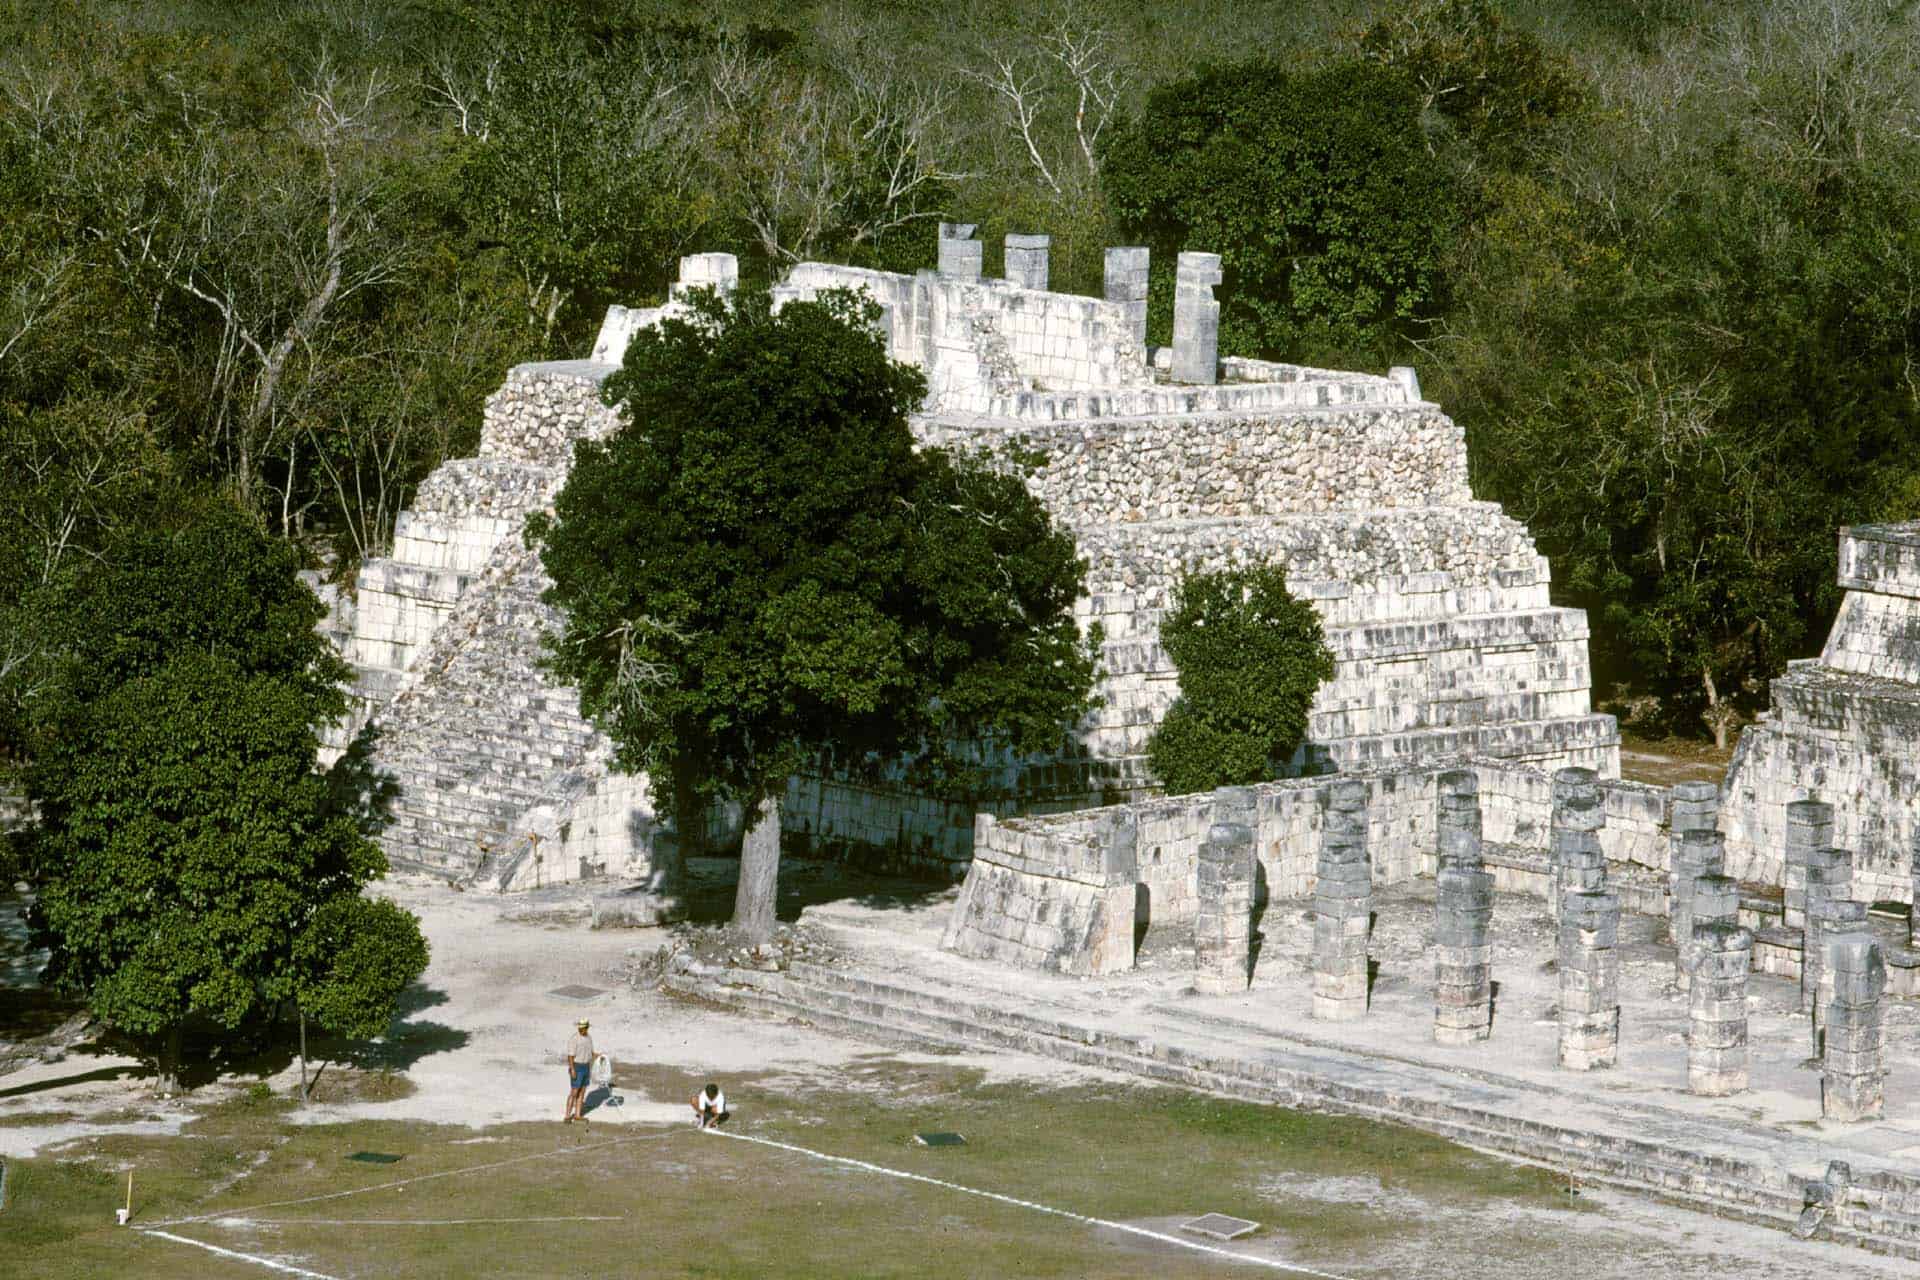 Maya Ruinen von Chichen Itza, Mexiko - Tempel des großen Opfertisches